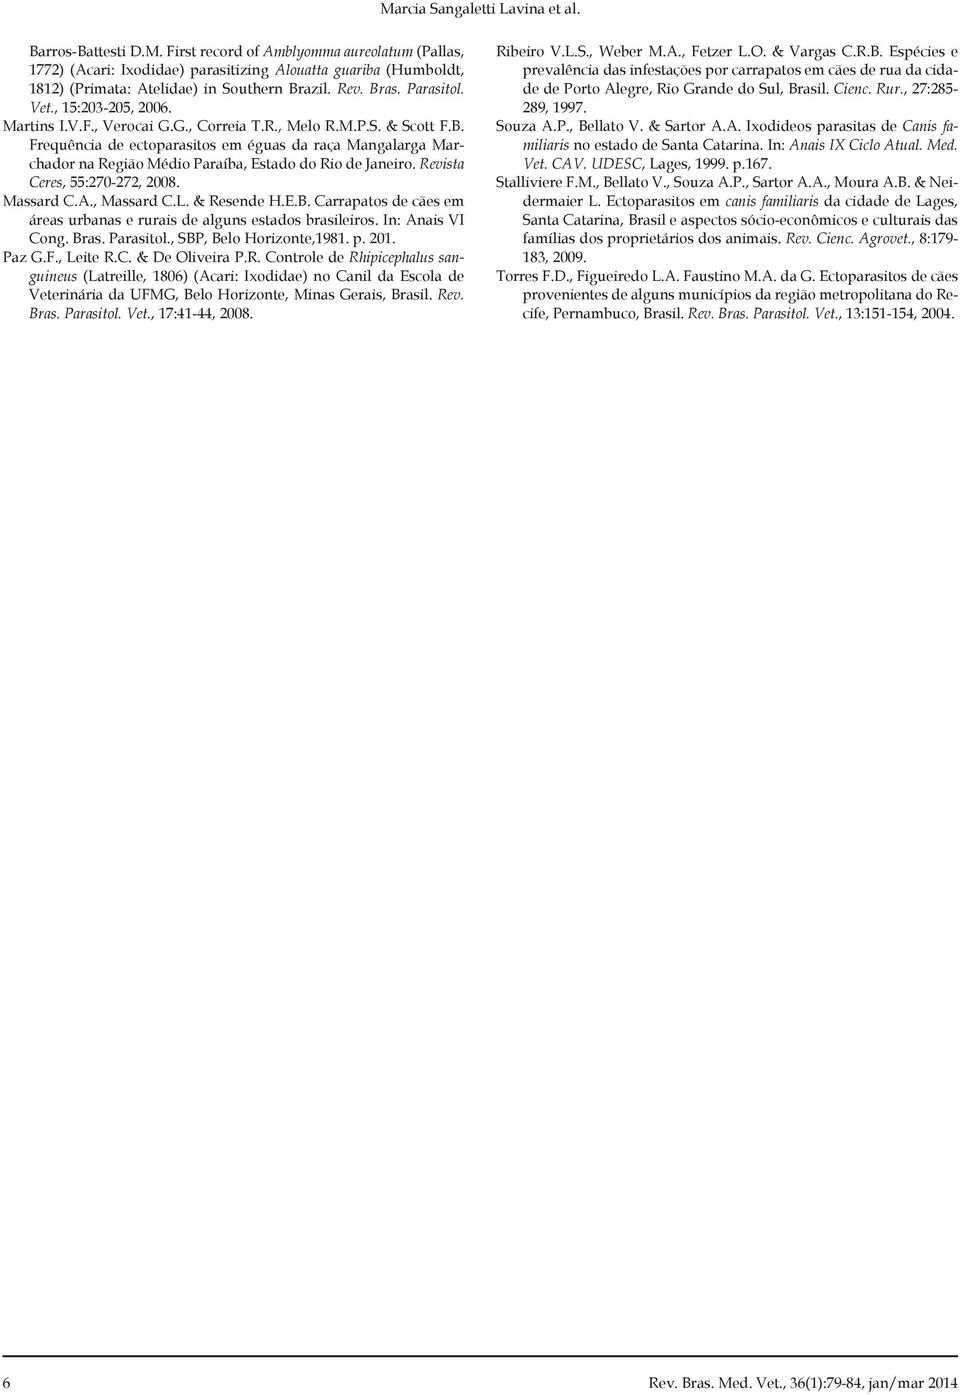 Revista Ceres, 55:270-272, 2008. Massard C.A., Massard C.L. & Resende H.E.B. Carrapatos de cães em áreas urbanas e rurais de alguns estados brasileiros. In: Anais VI Cong. Bras. Parasitol.